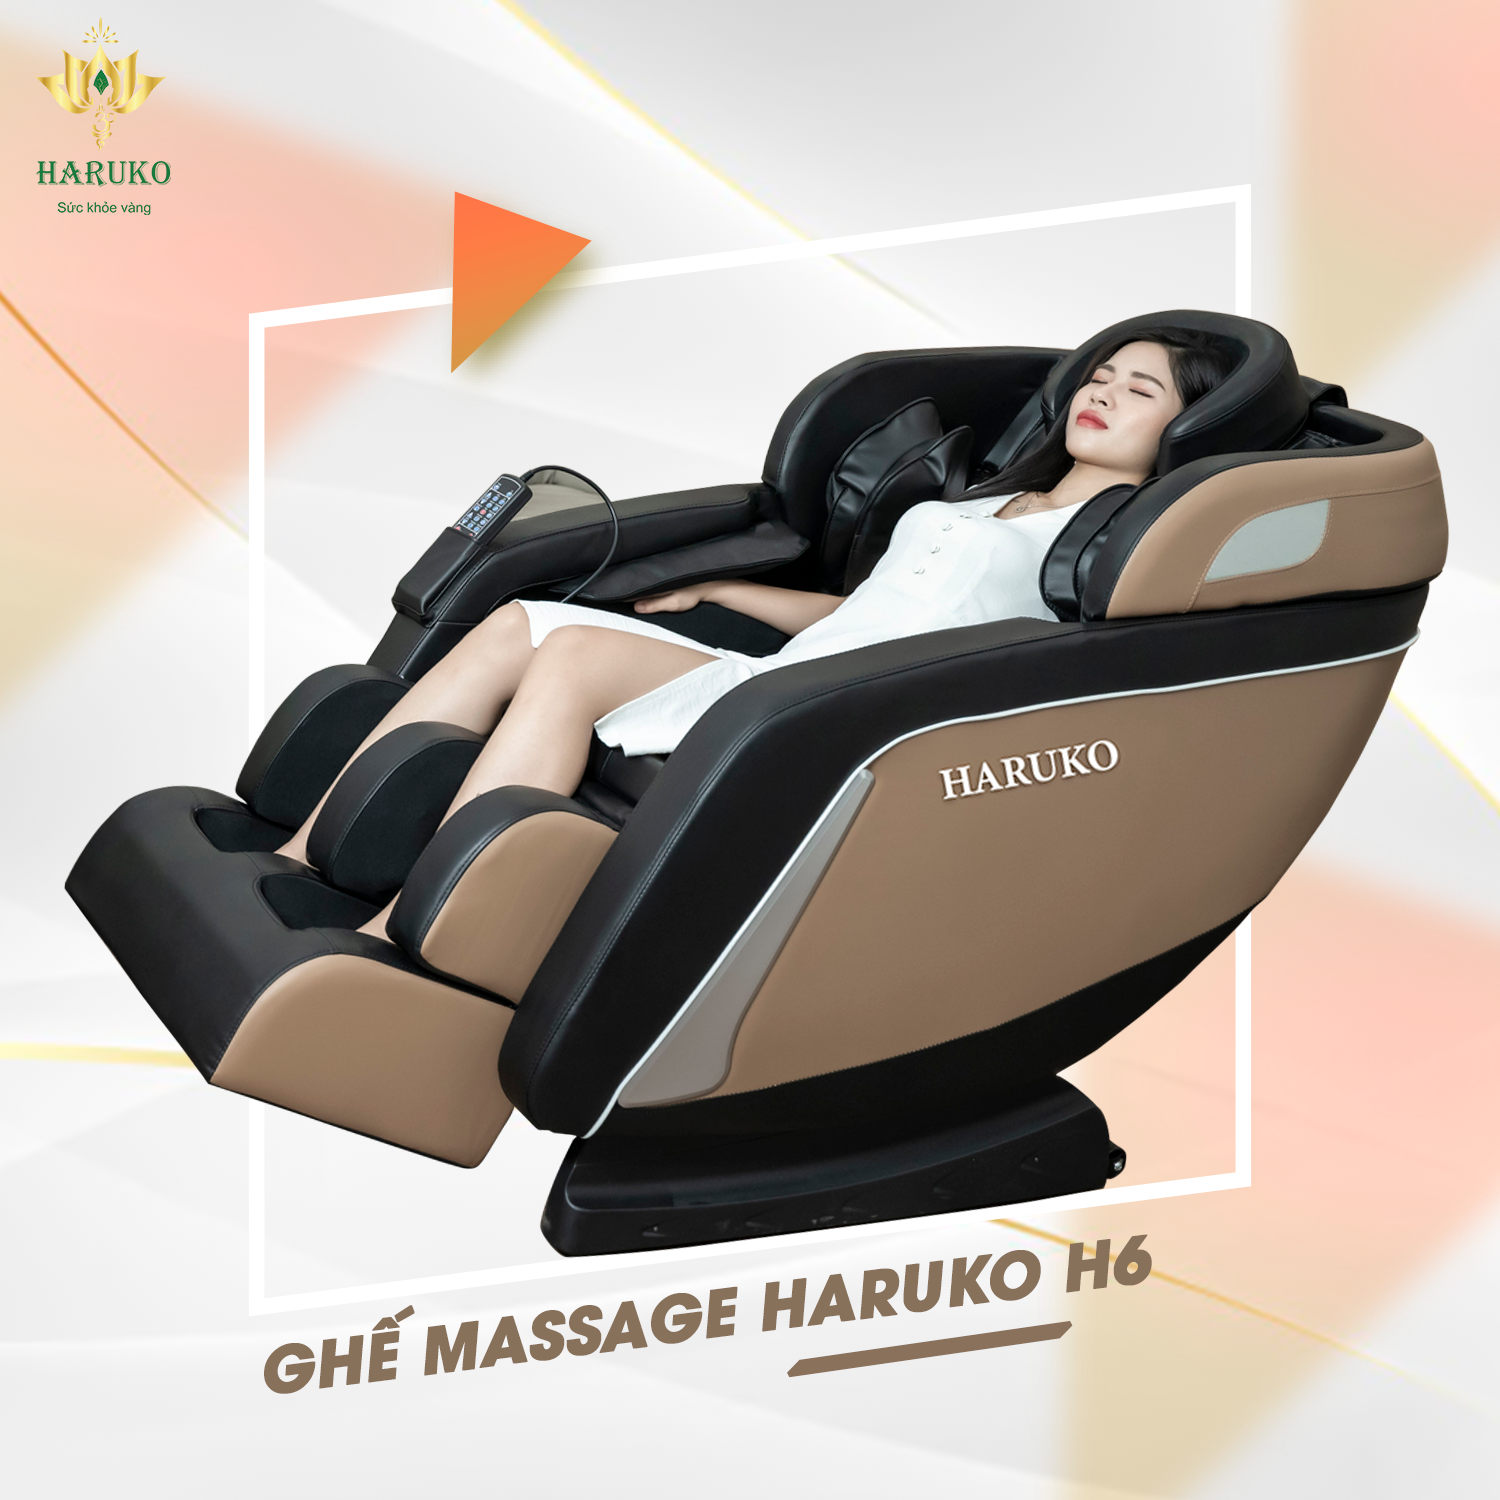 Ghế massage H6 là sản phẩm ghế massage phổ biến với nhiều gia đình nhờ mức giá ưu đãi và những tính năng hiện đại,dễ sử dụng